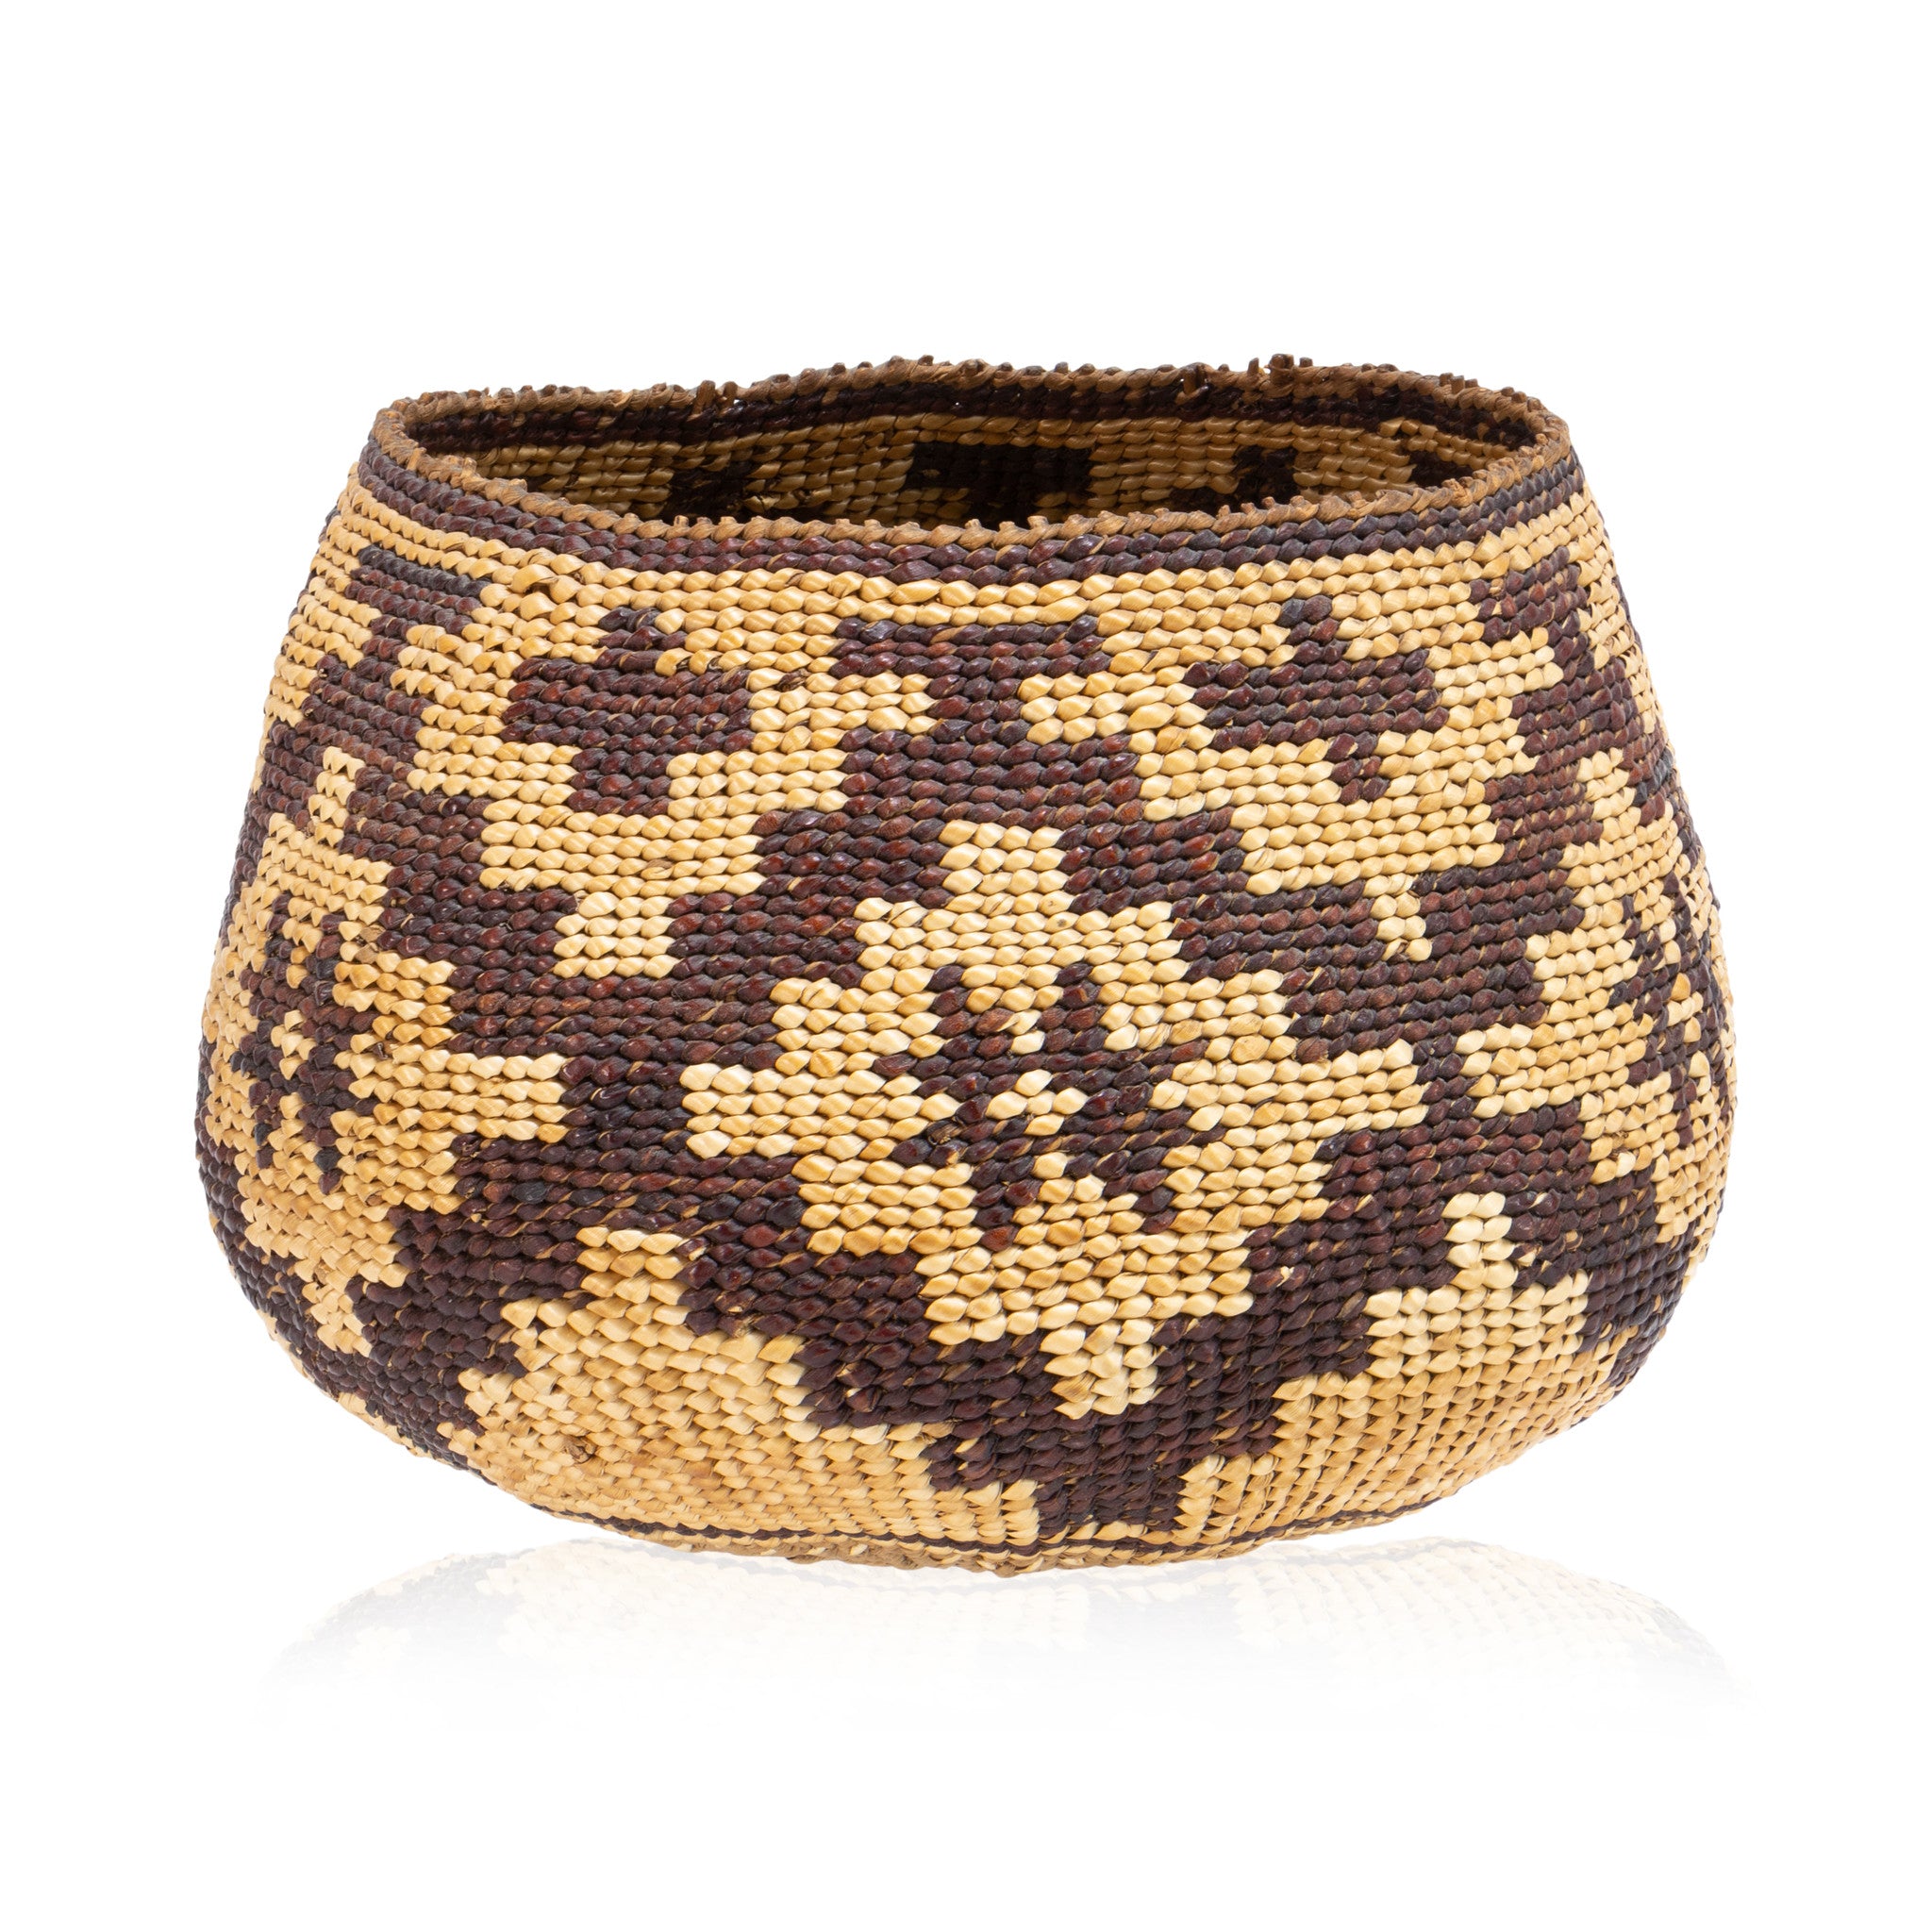 Pit River Basket, Native, Basketry, Vertical